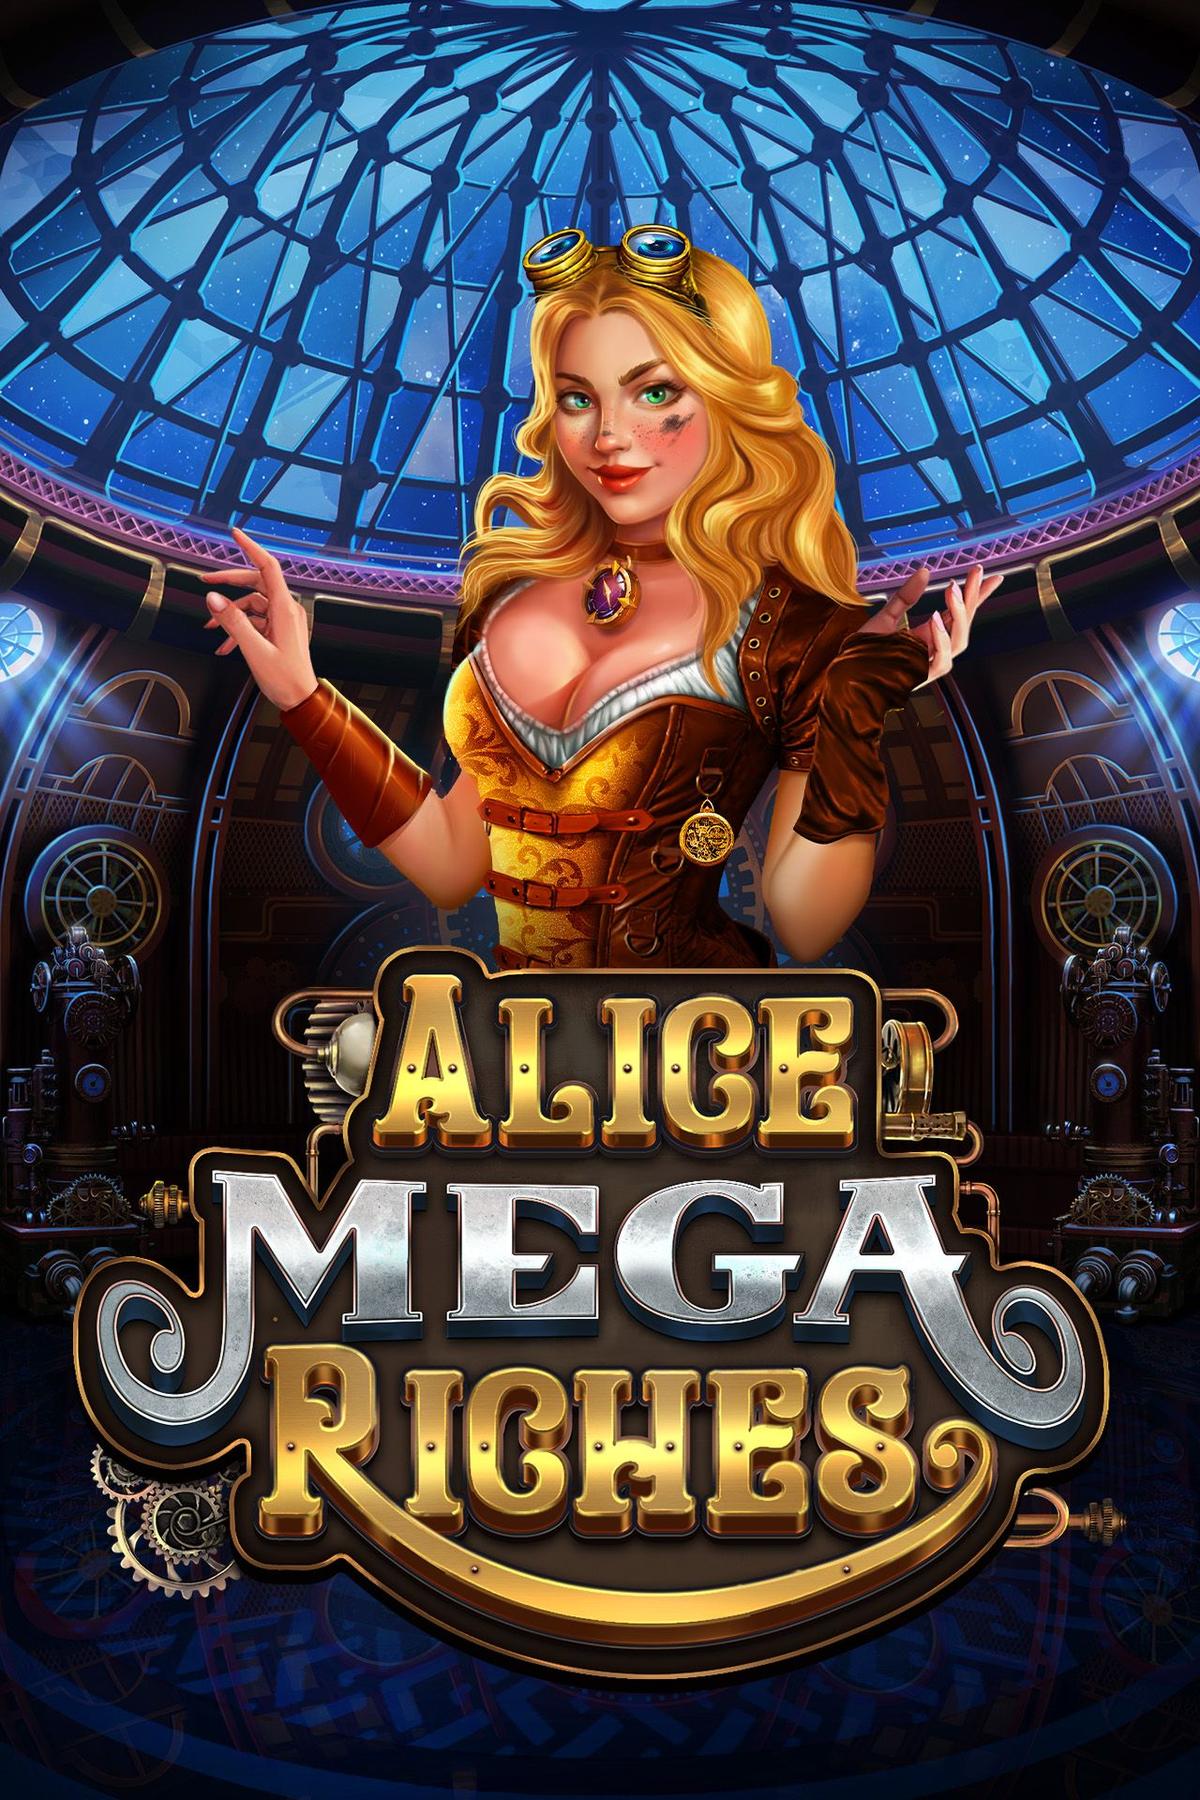 Alice Mega Riches